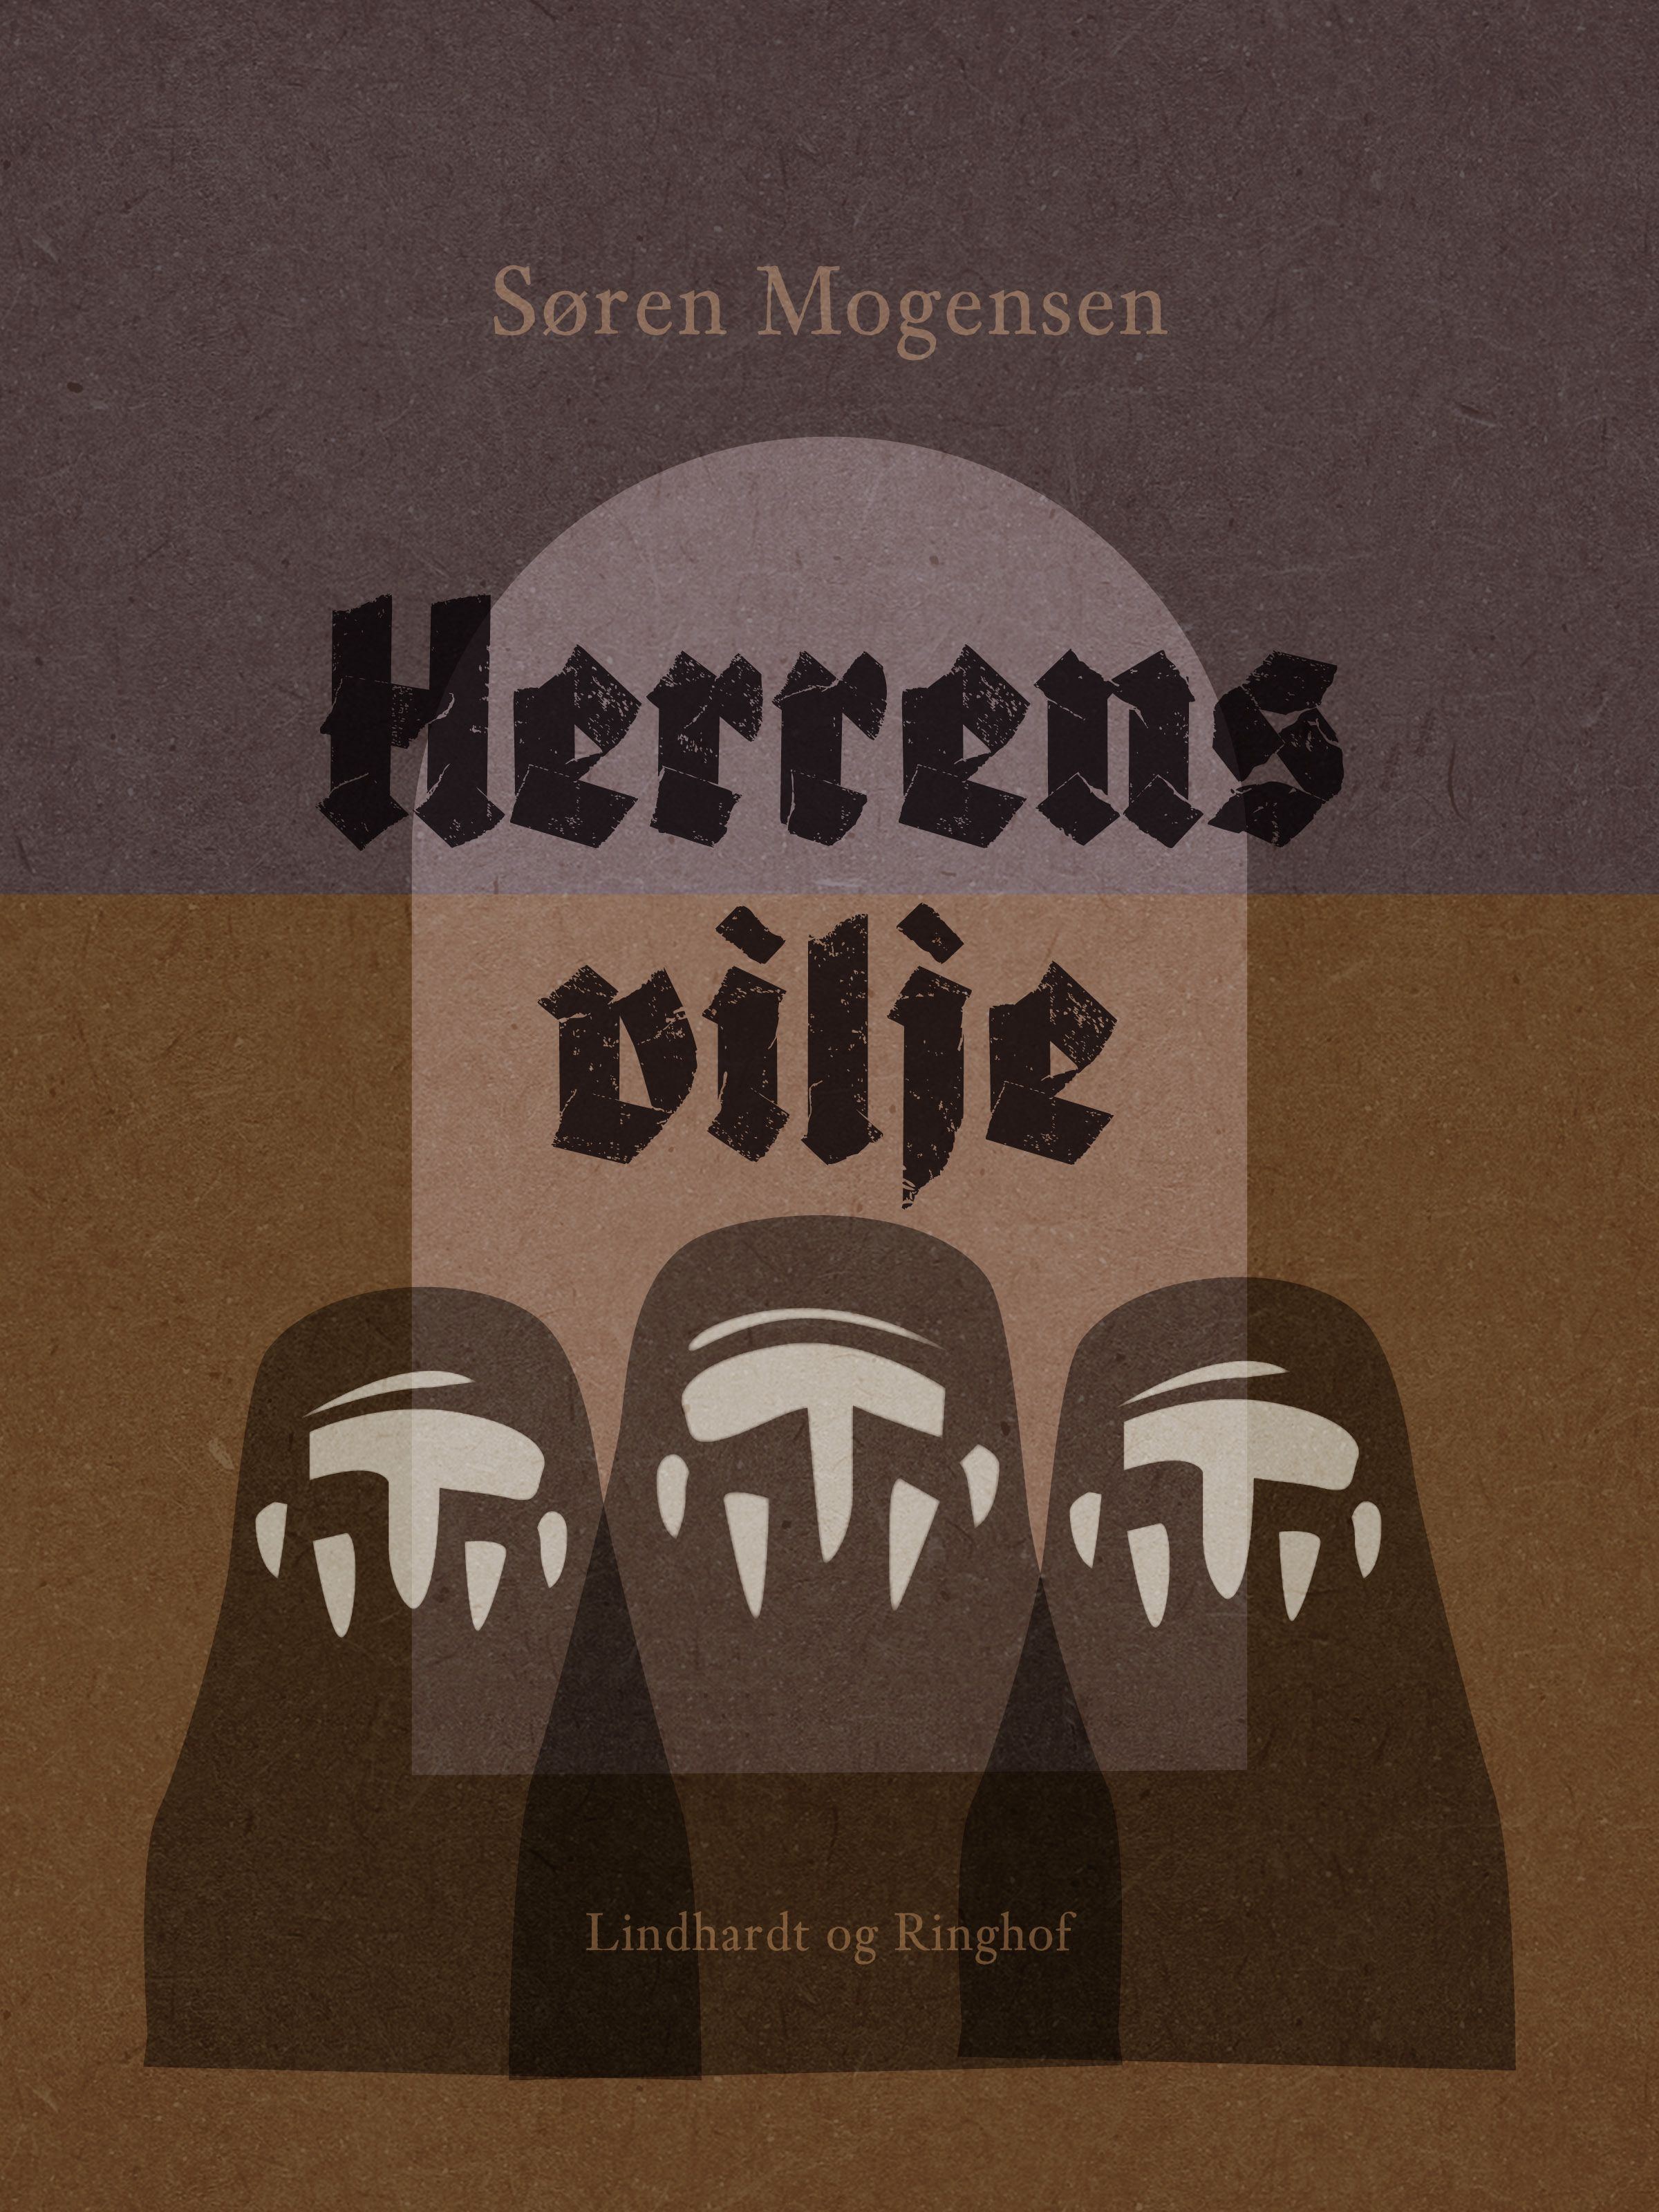 Herrens vilje, e-bok av Søren Mogensen